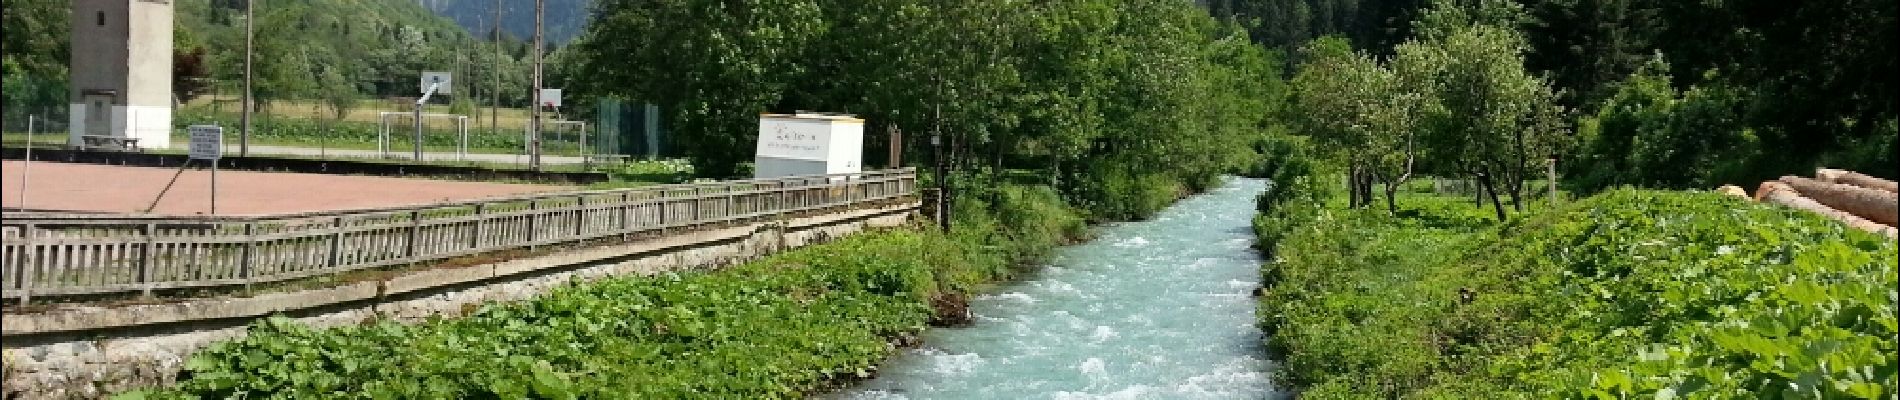 Excursión Senderismo Valjouffrey - Valbonnais - Valjouffrey La Chalp - 6.8km 100m 1h45 - 2018 06 18 - public - Photo